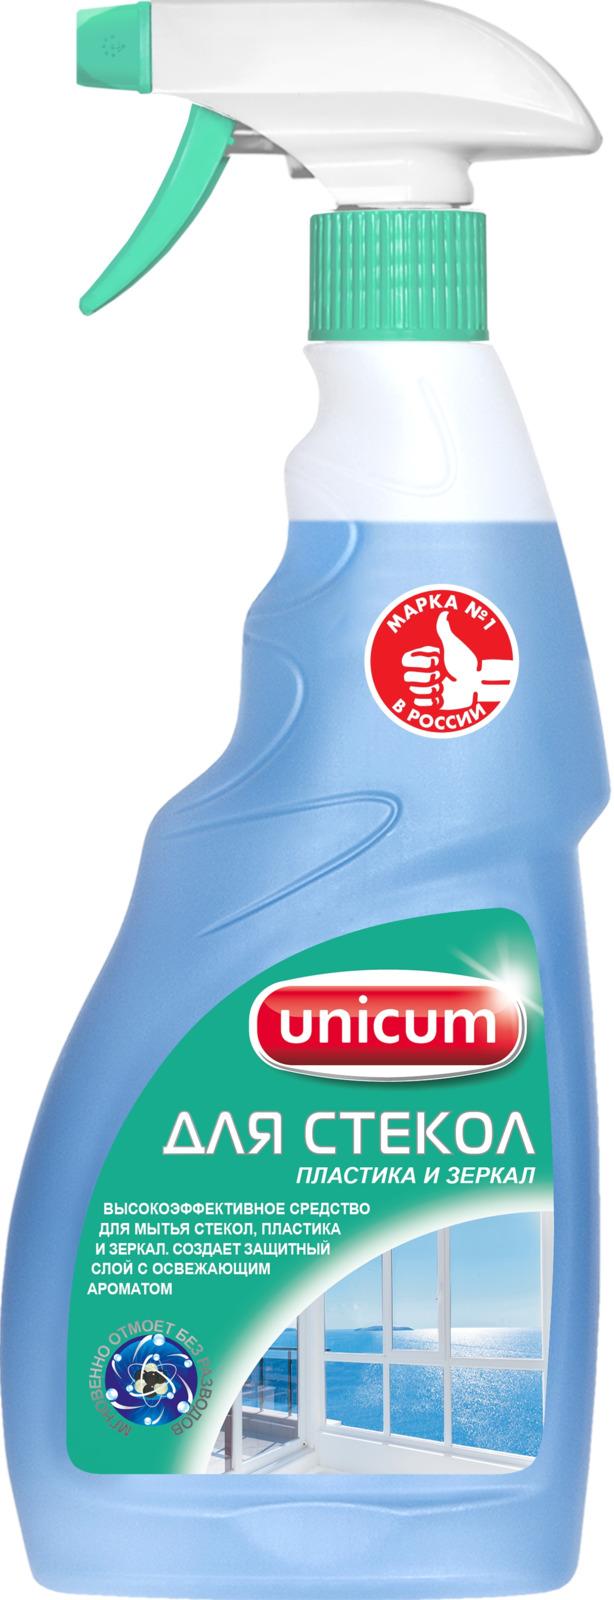 Средство Unicum Для мытья стекол пластика и зеркал 500 мл., спрей